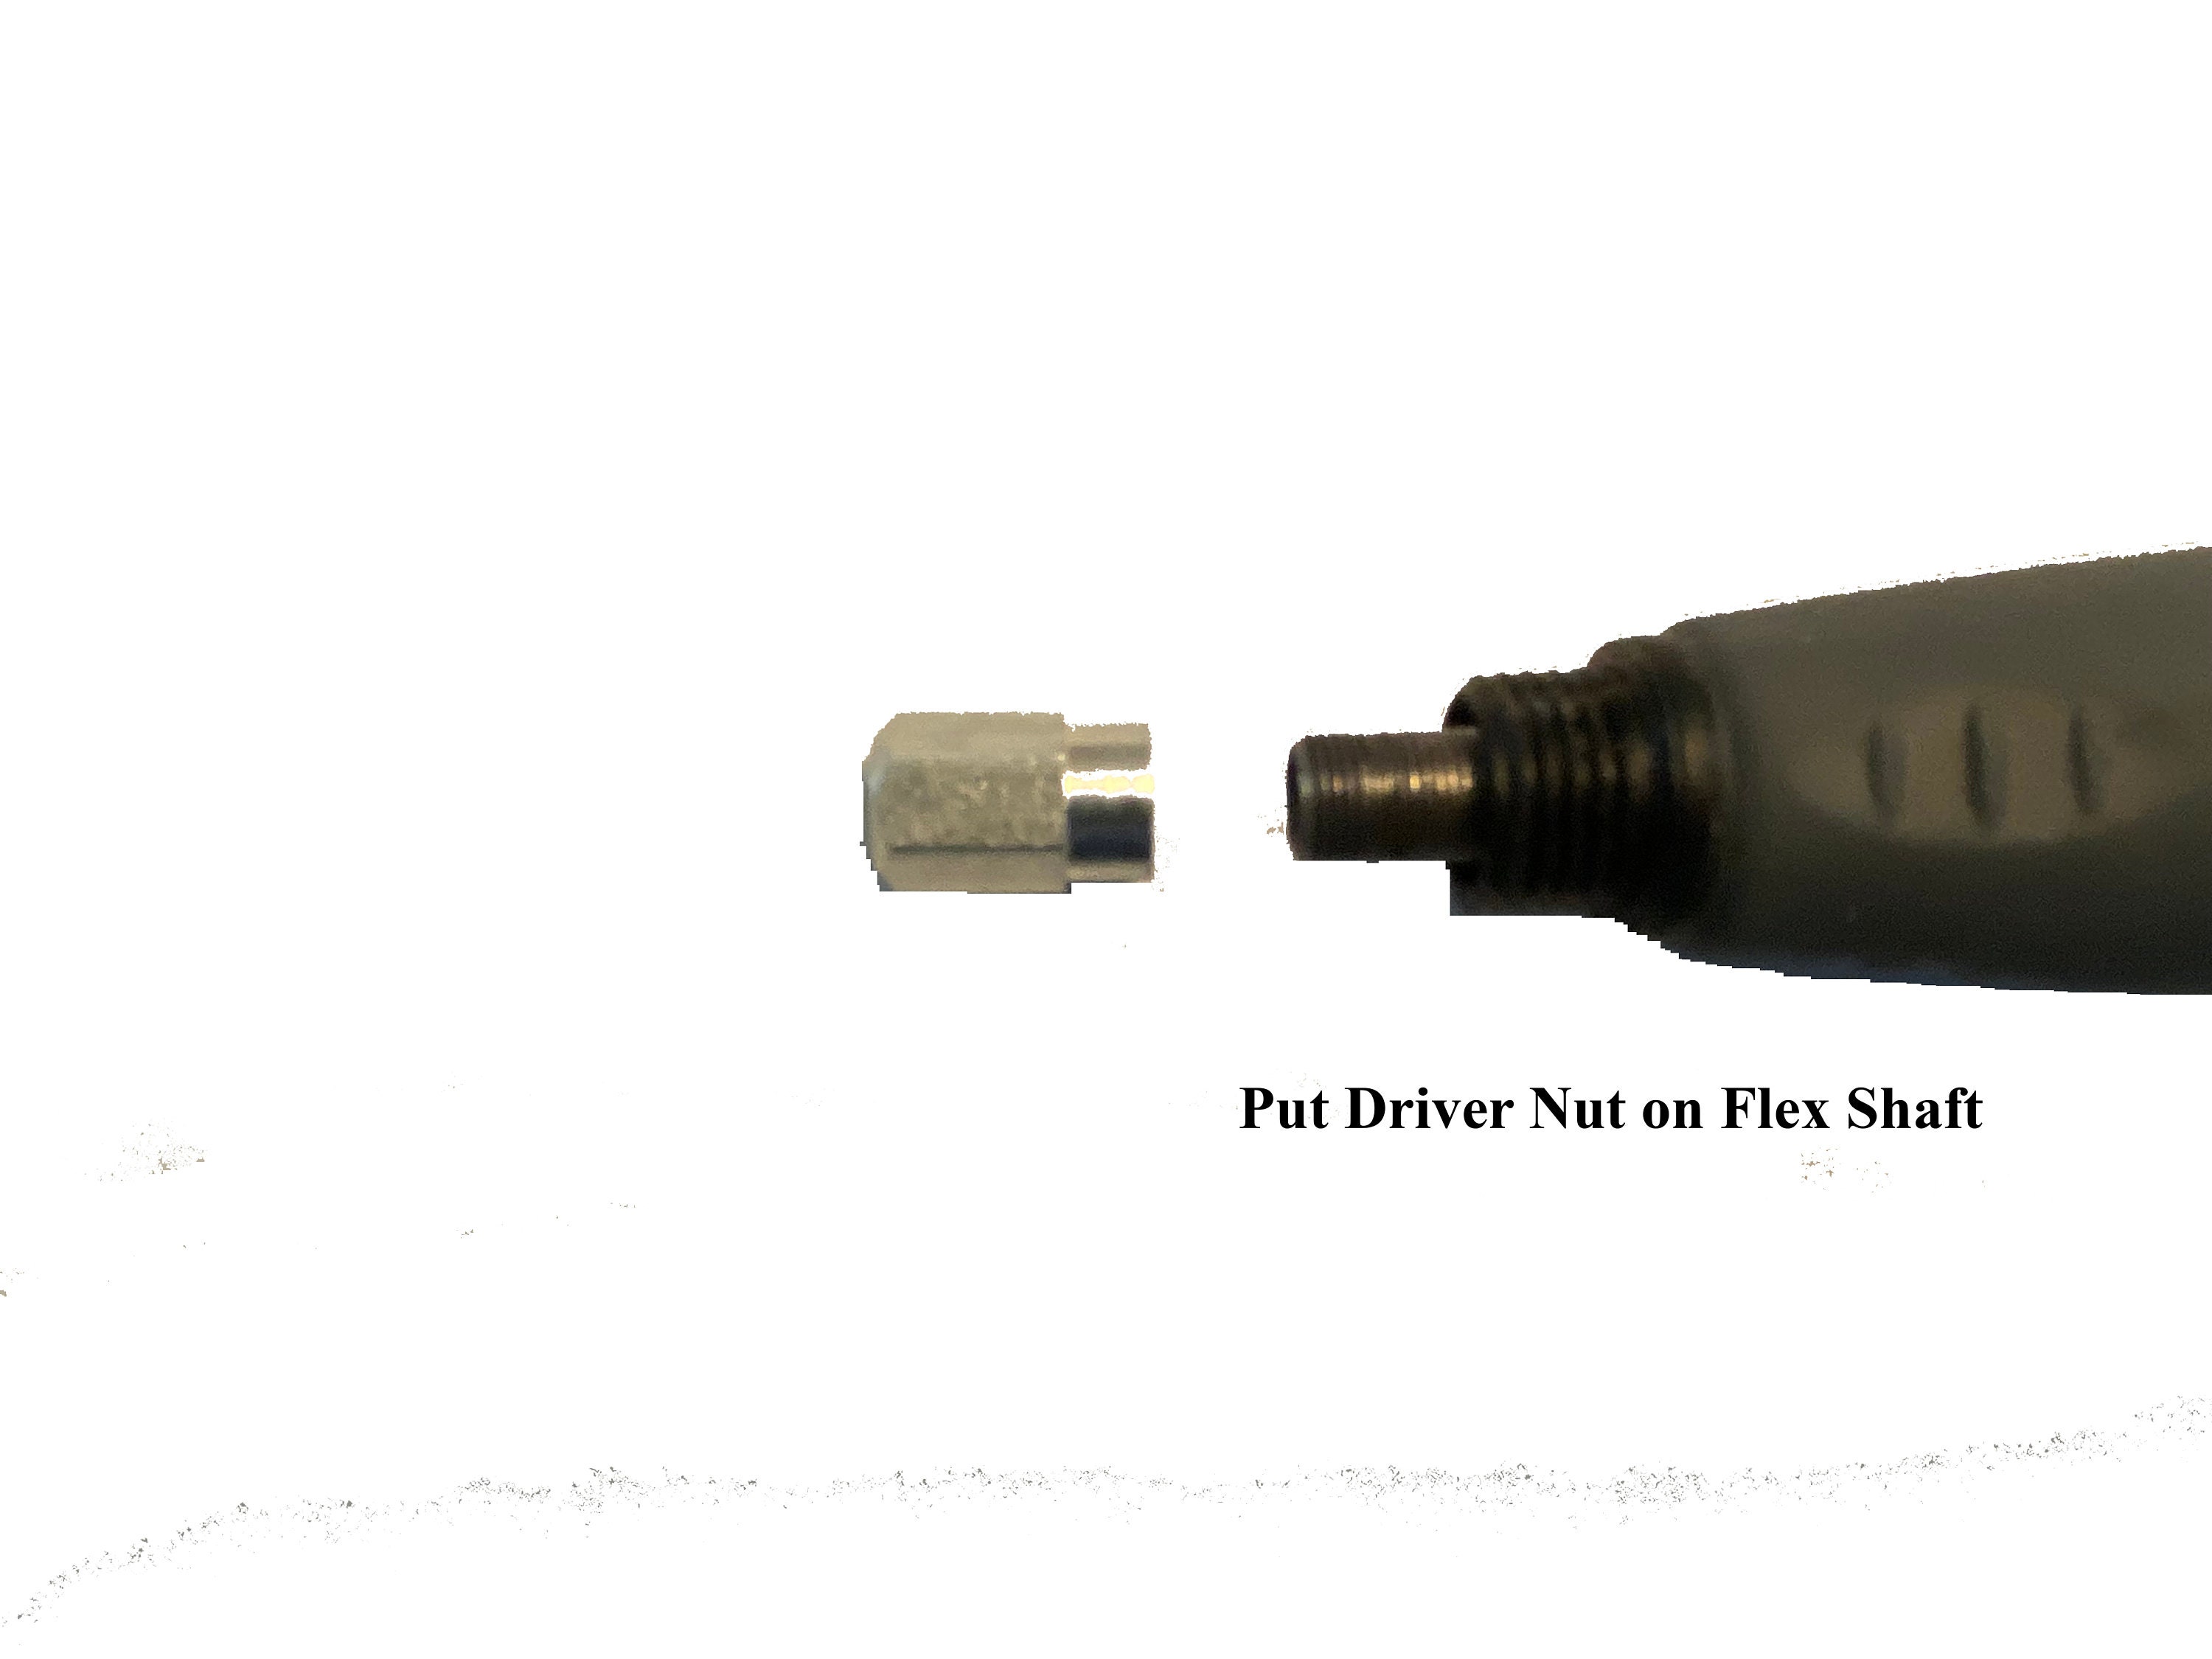 Dremel flex-shaft attachment 36 for Sale in Statesville, NC - OfferUp